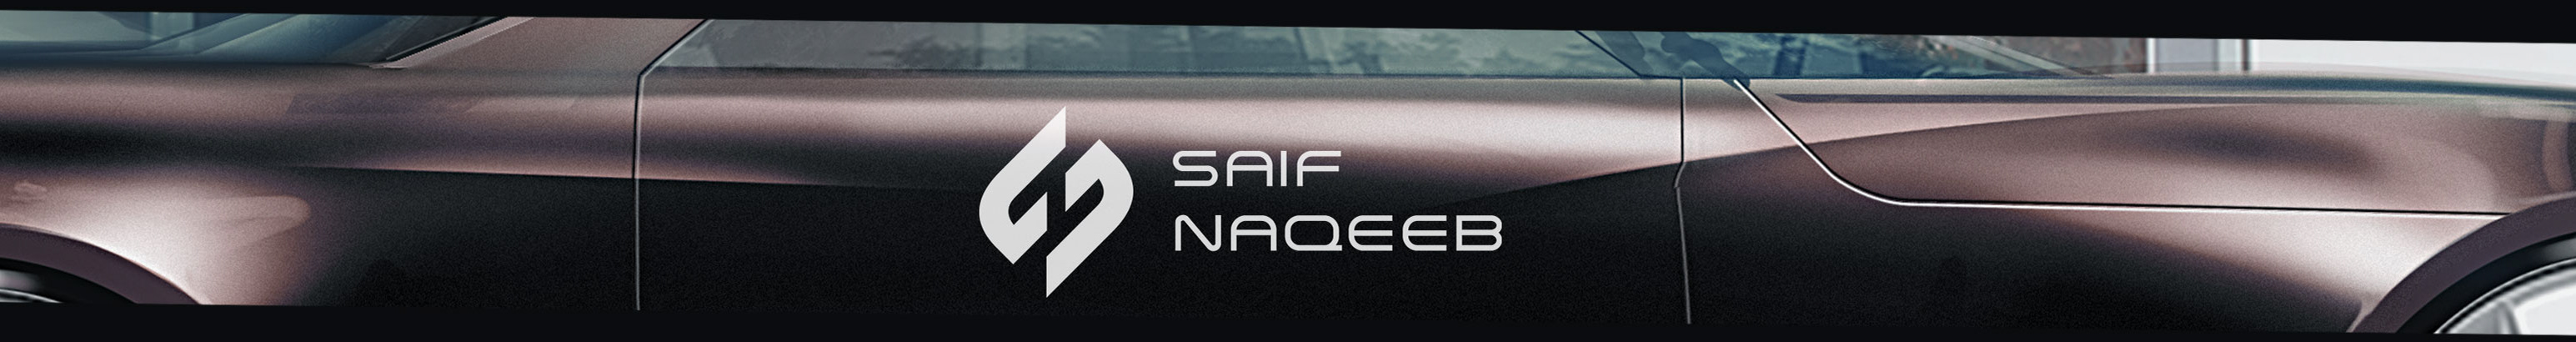 Saif Naqeeb profil başlığı